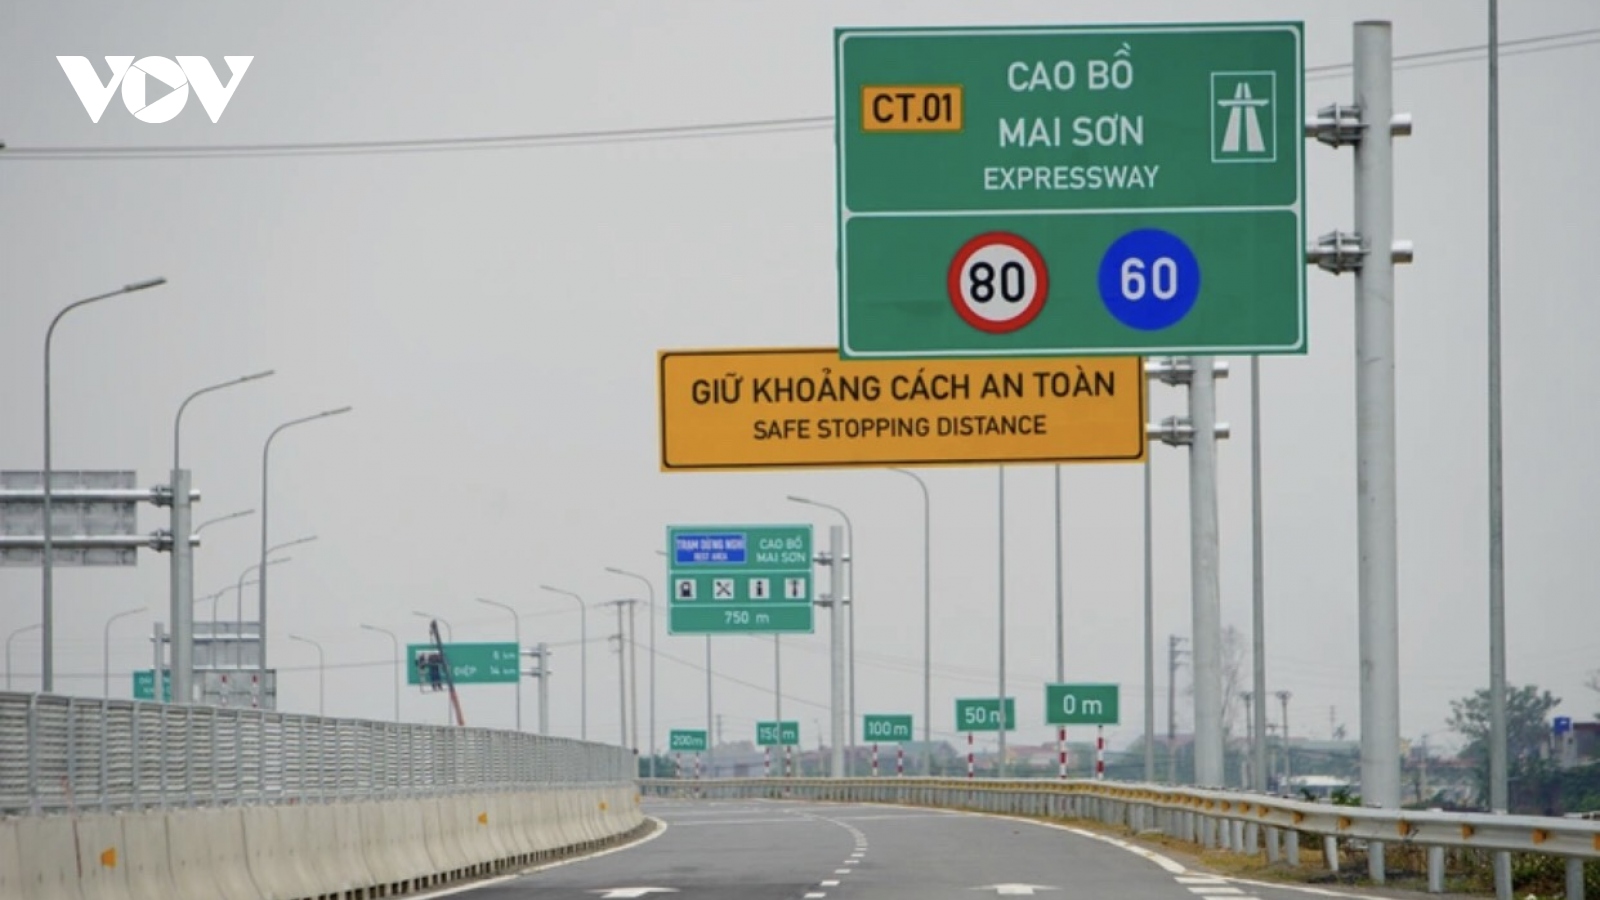 Mở rộng cao tốc Cao Bồ - Mai Sơn lên chuẩn cao tốc 6 làn xe